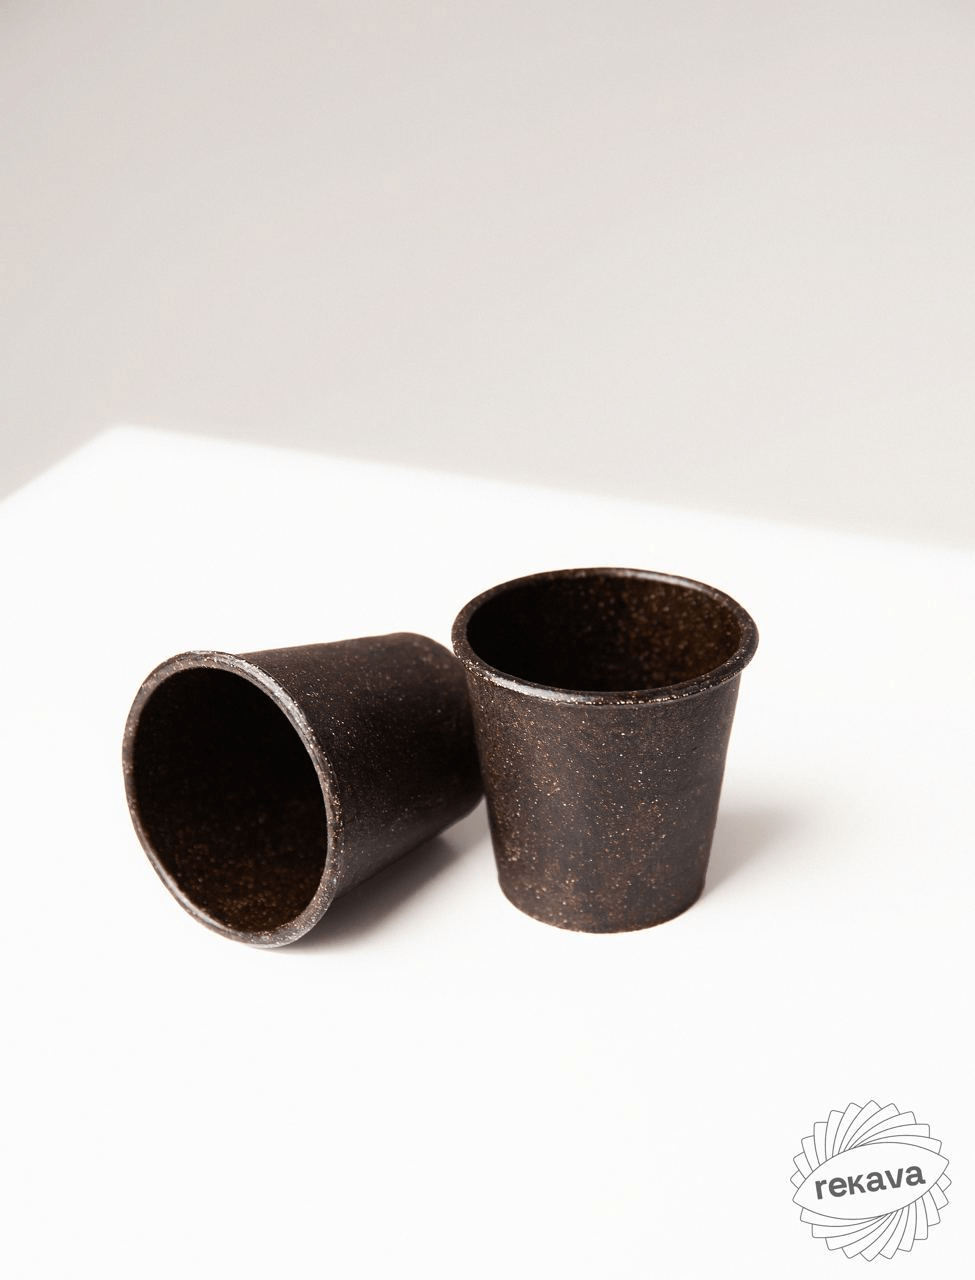 стаканчики з кавової гущі від бренду rekava